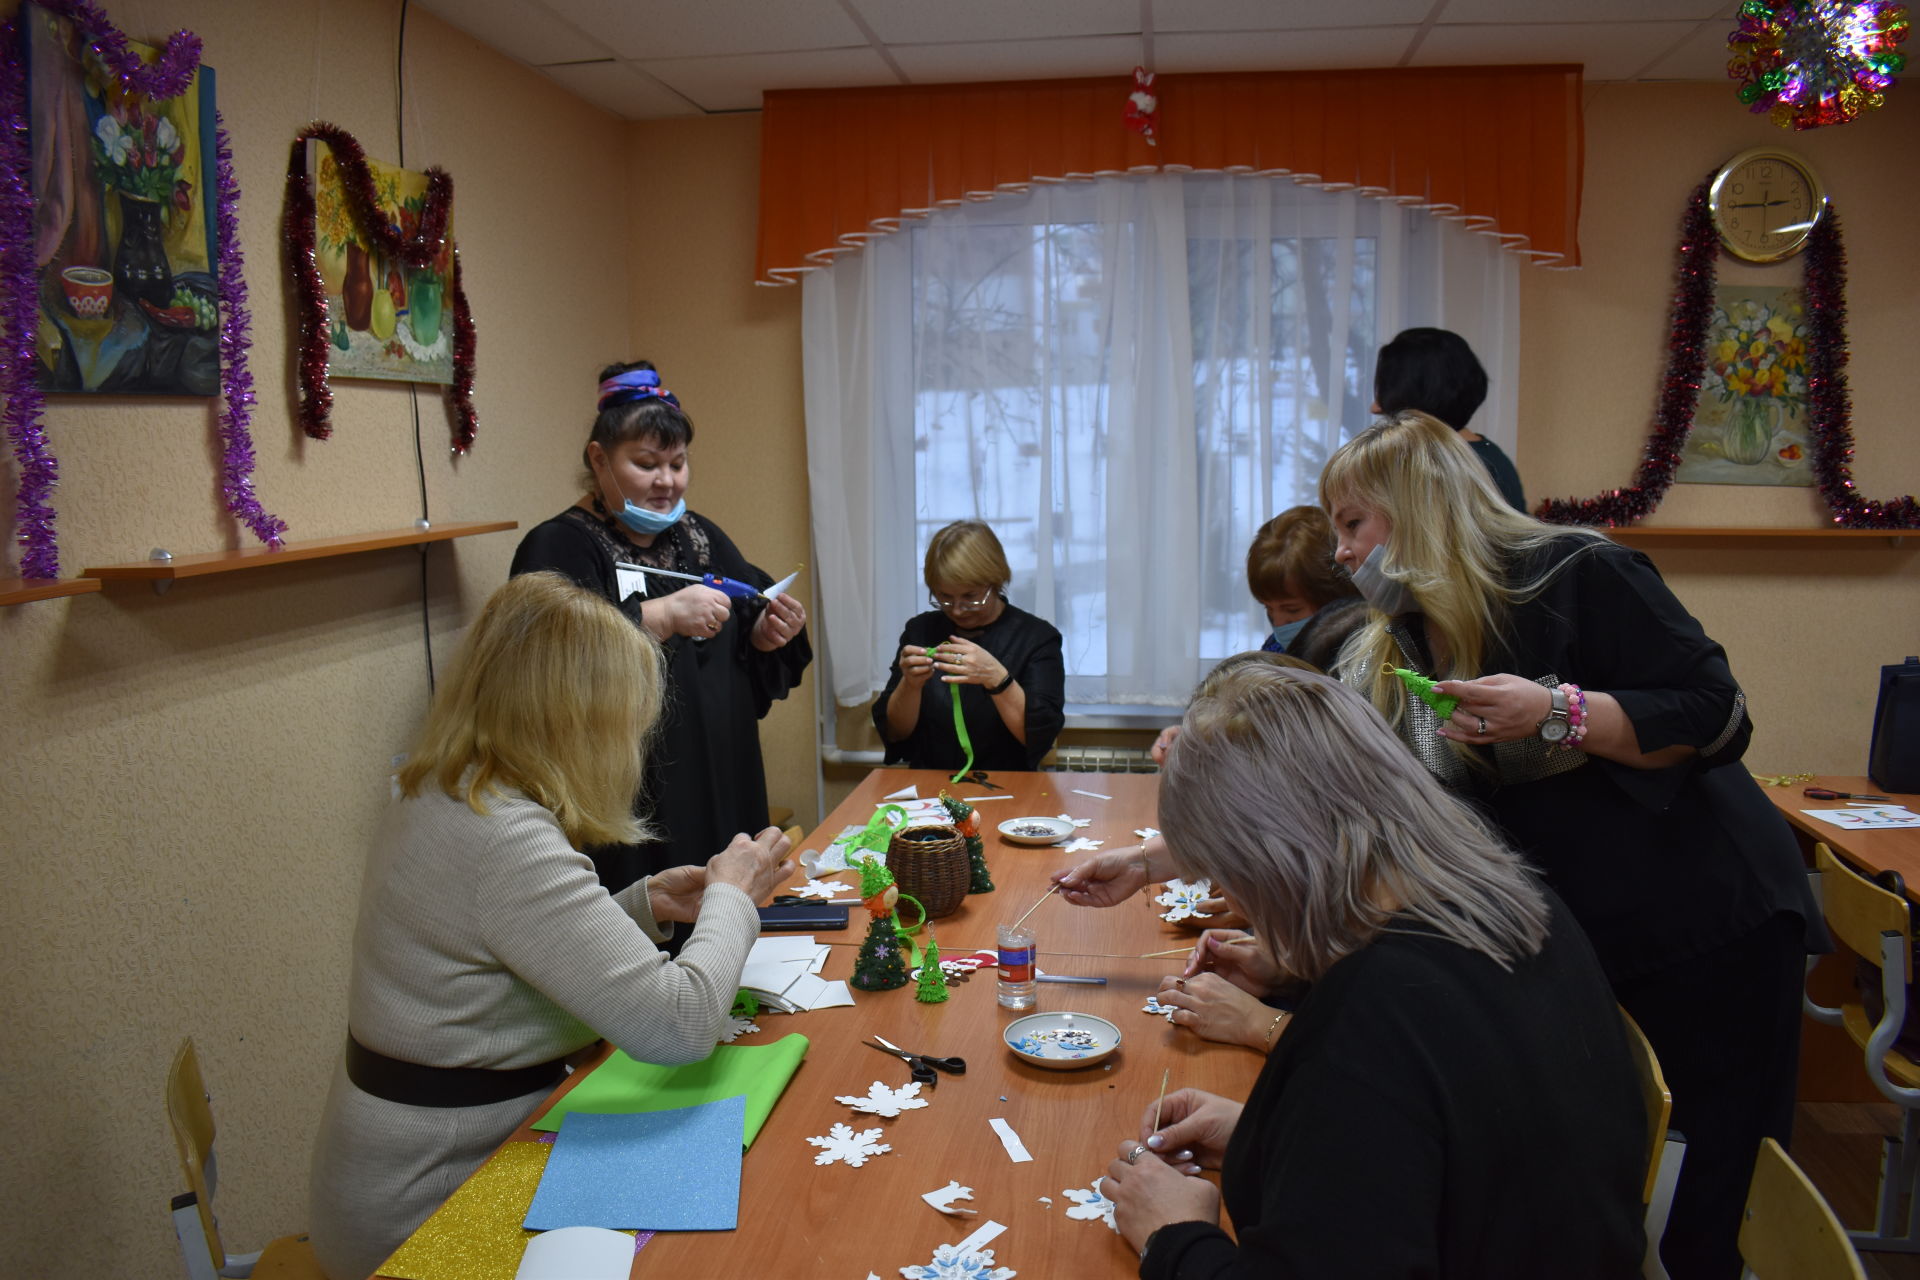 Председатели профсоюзных организаций встретились в Камских Полянах